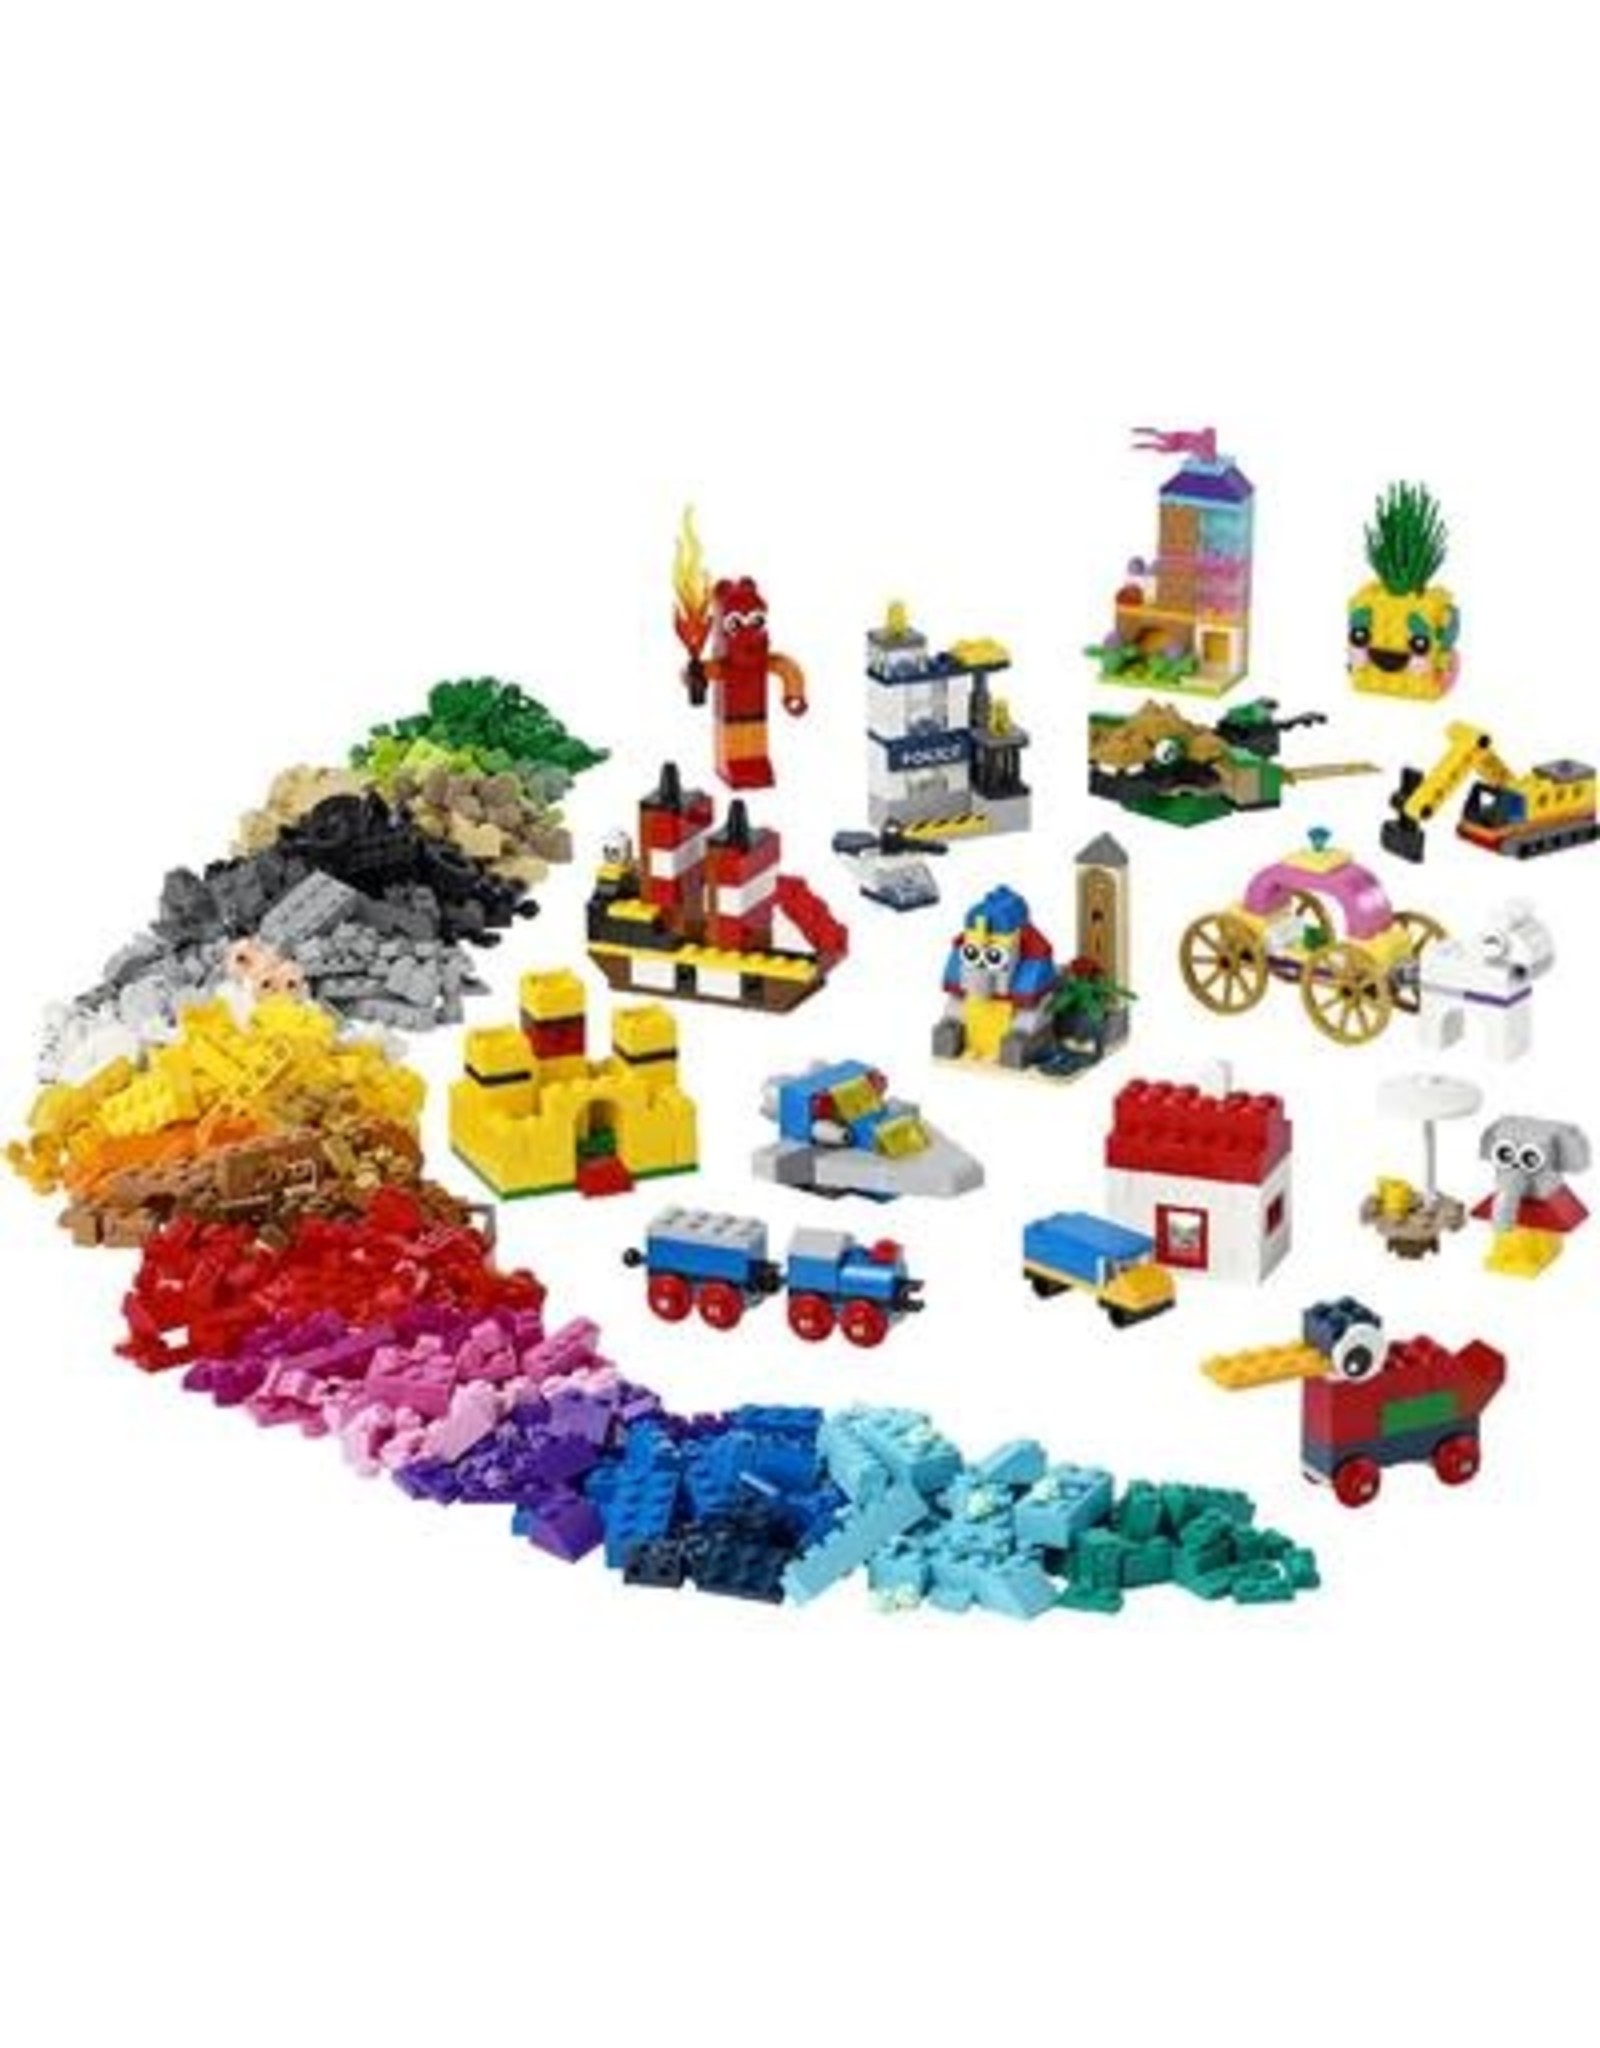 LEGO Lego Classic 11021  90 jaar spelen